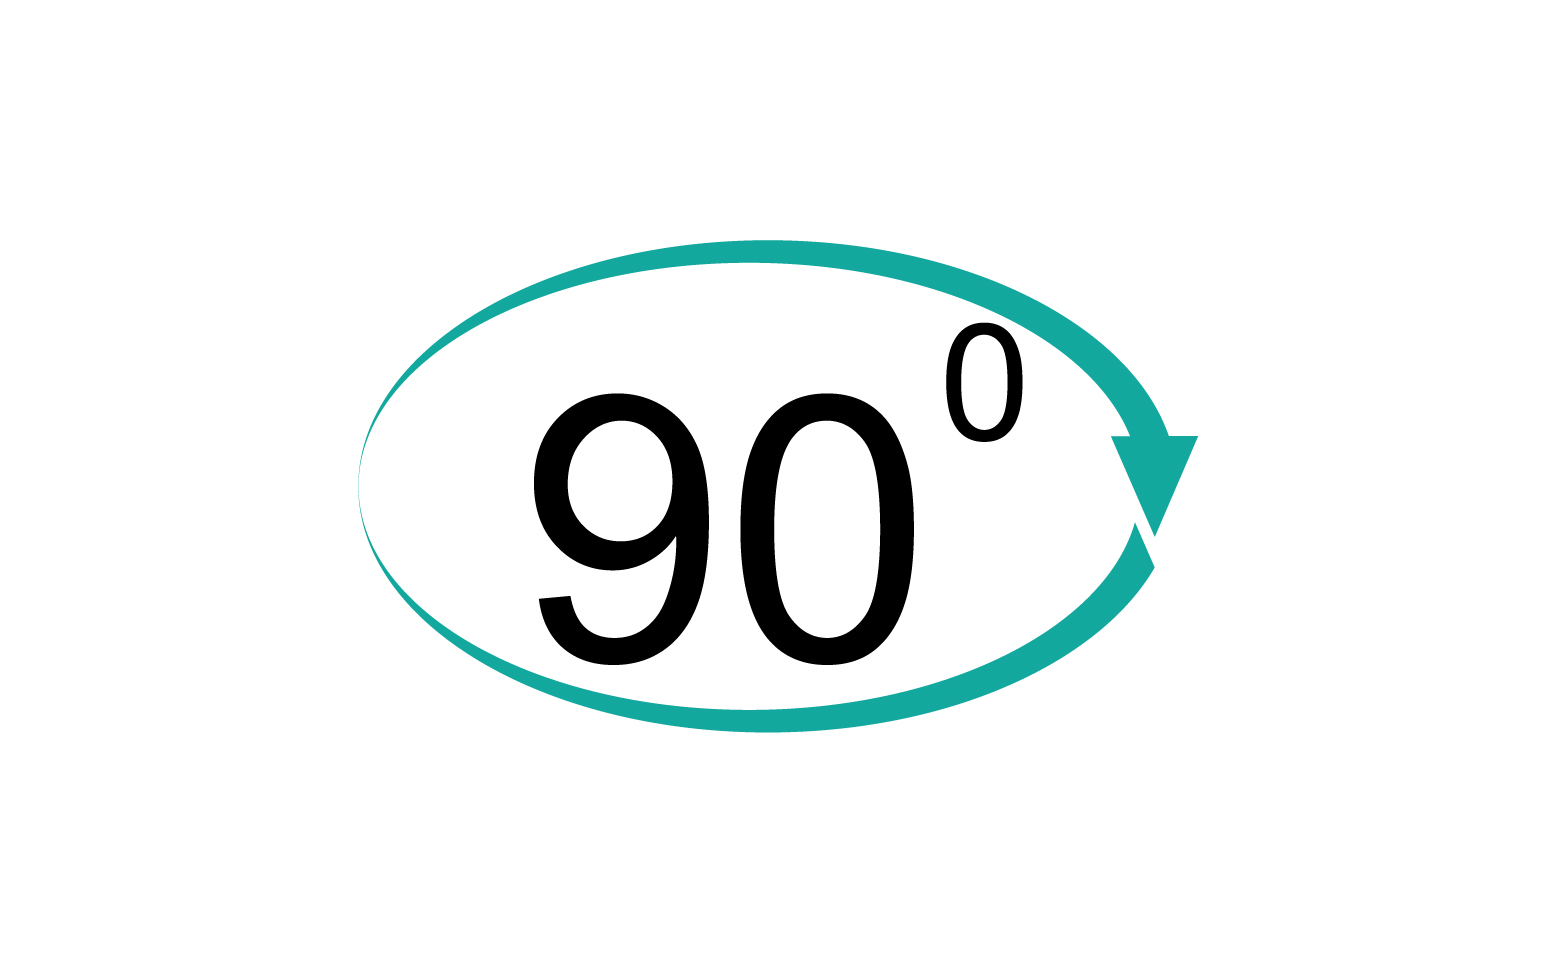 90 degree angle rotation icon symbol logo v41